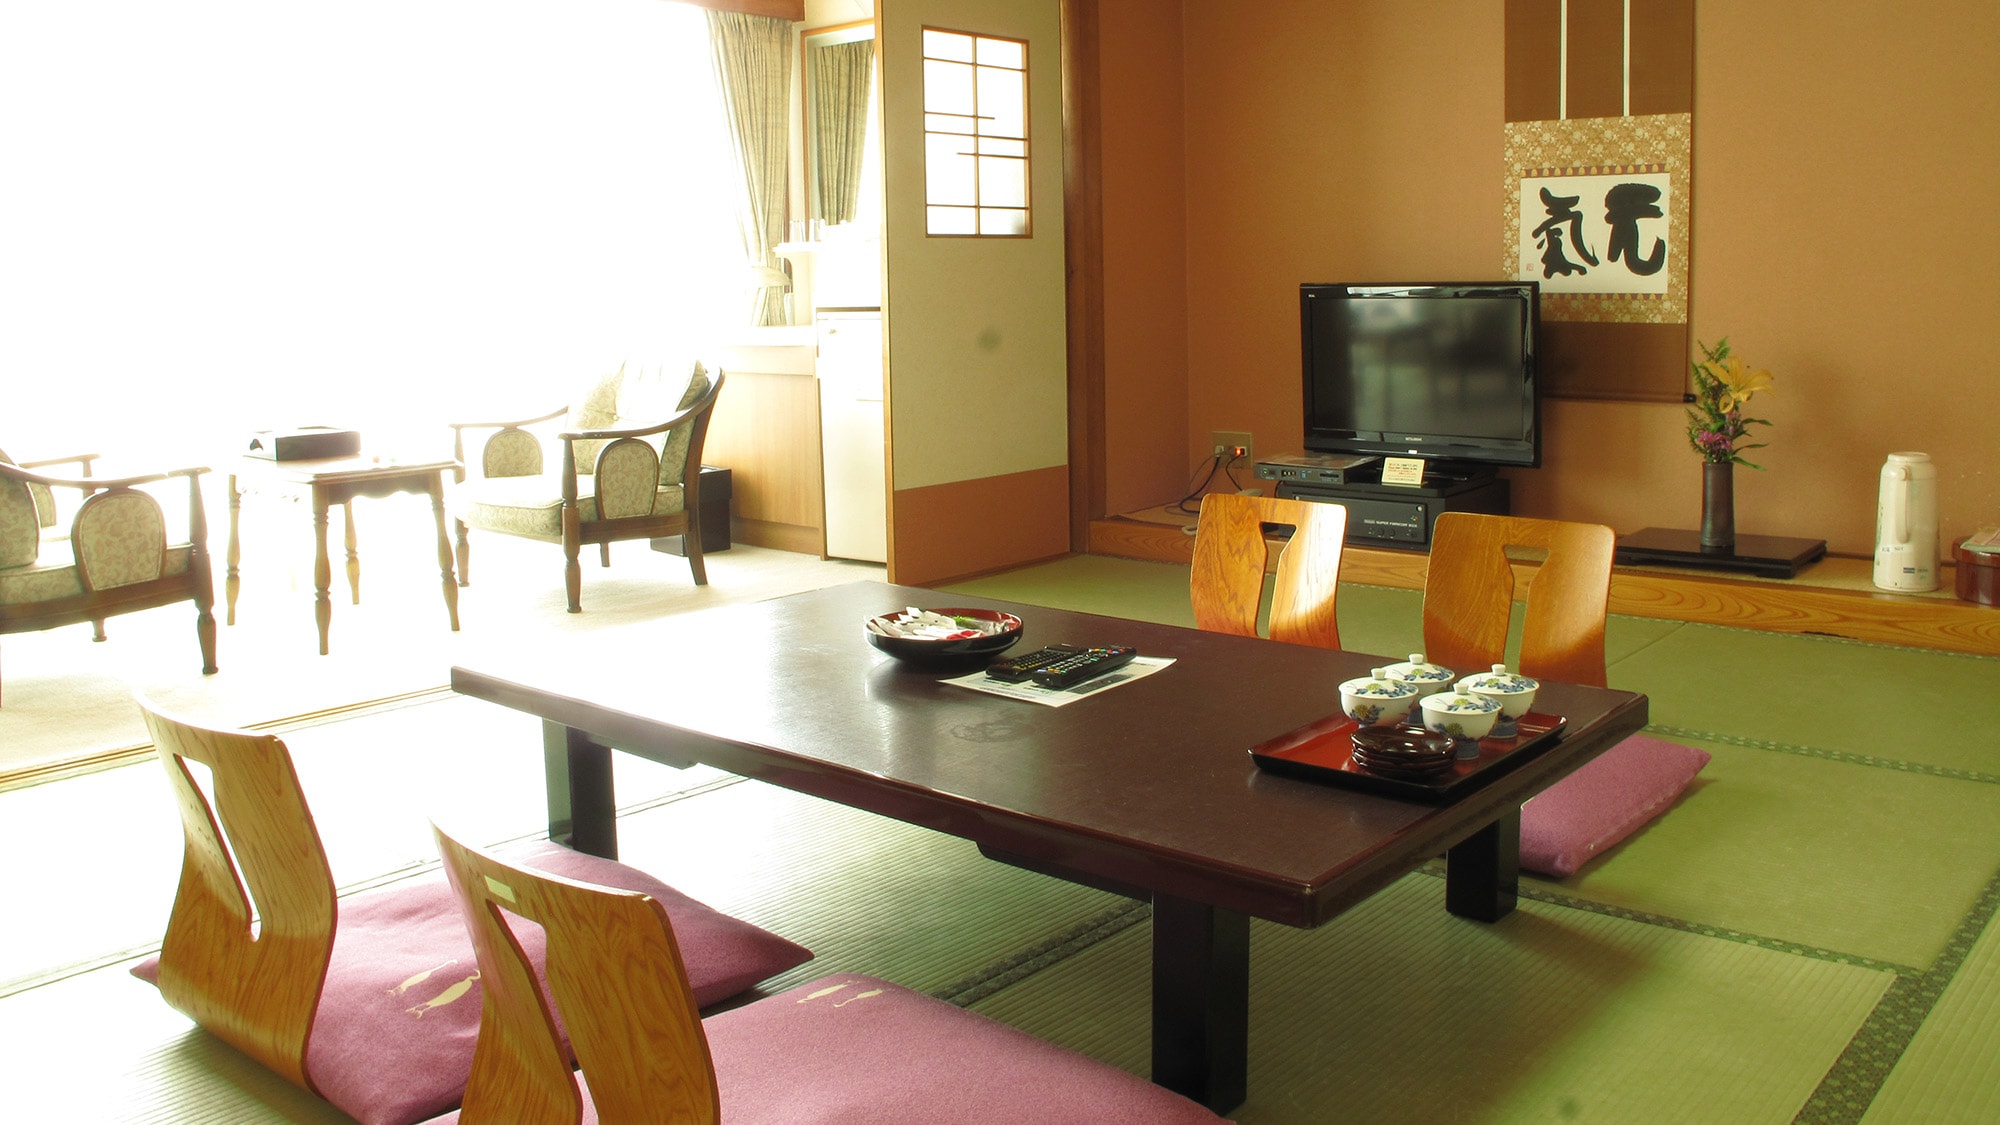 10張榻榻米的日式房間示例